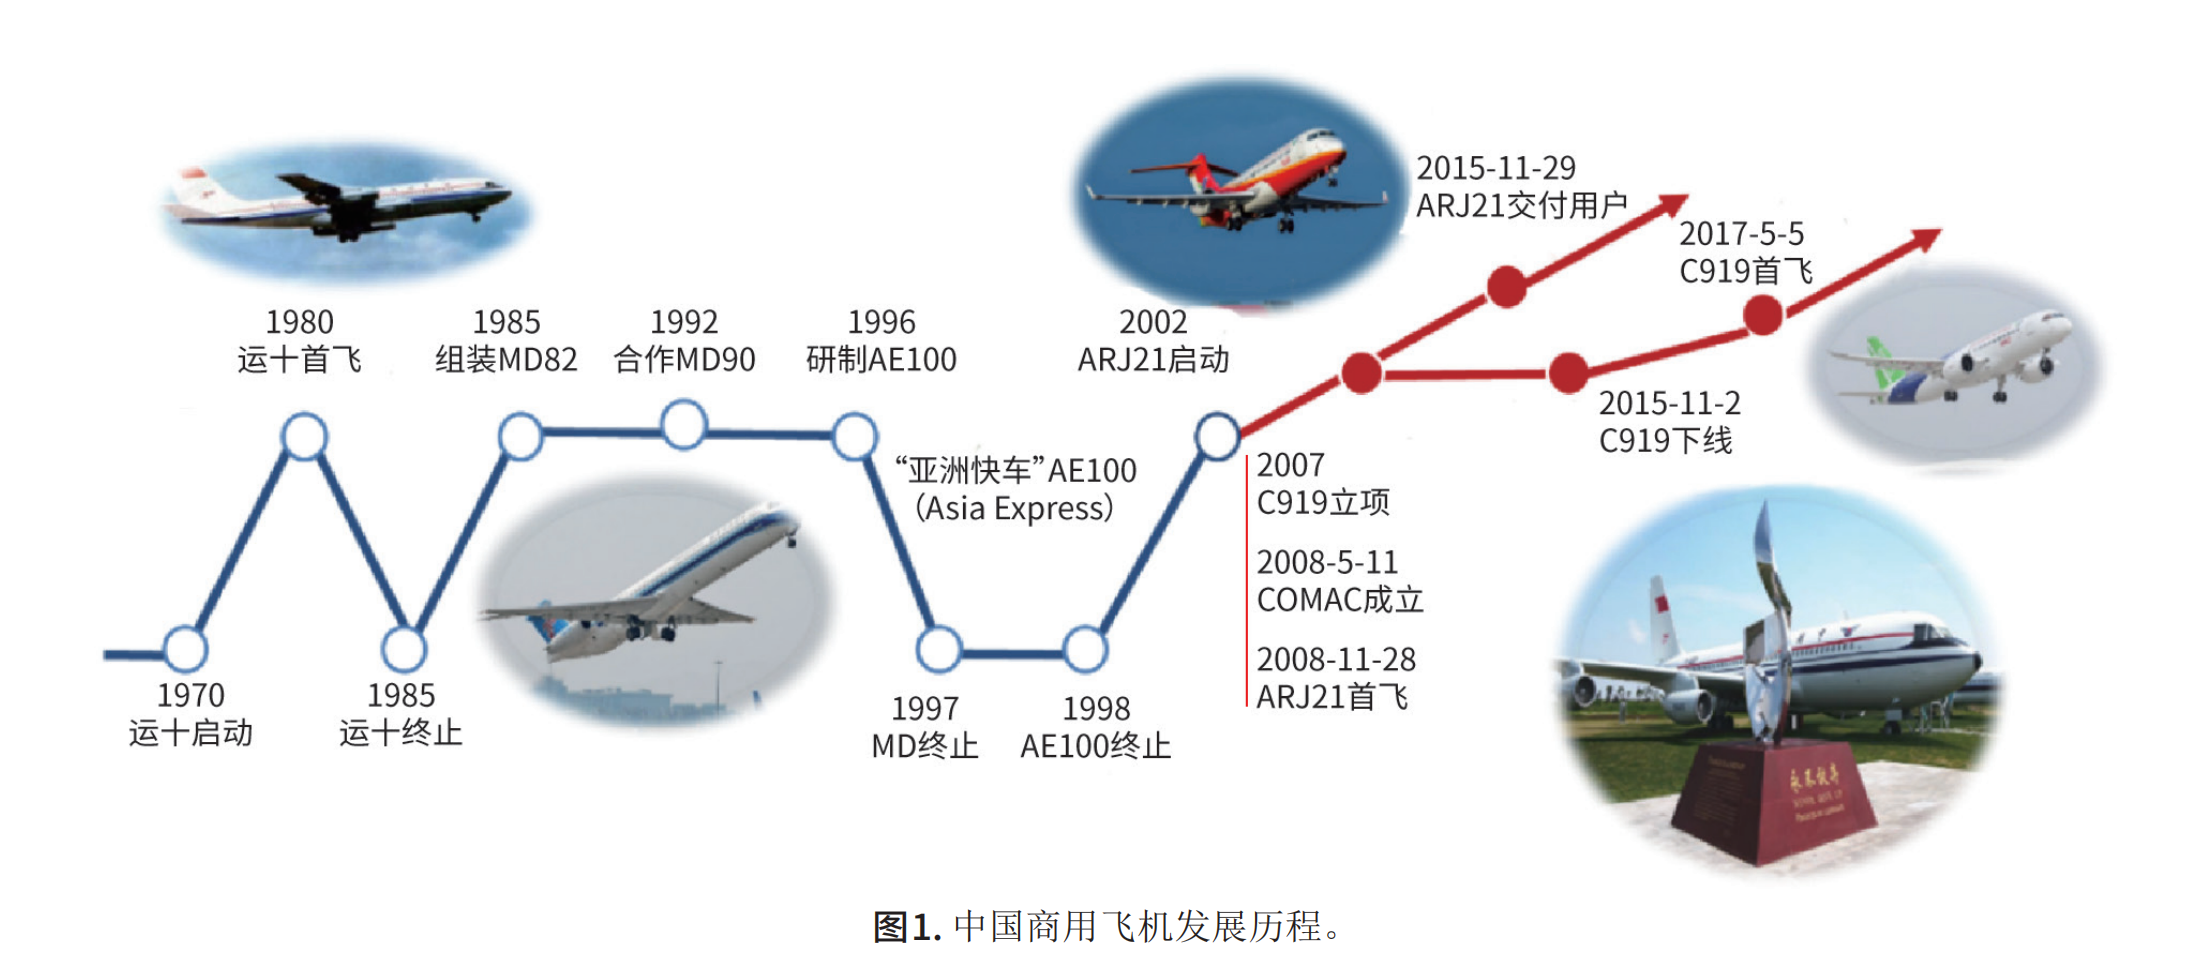 来源于吴光辉2021年刊发的论文《中国商用飞机发展三部曲》